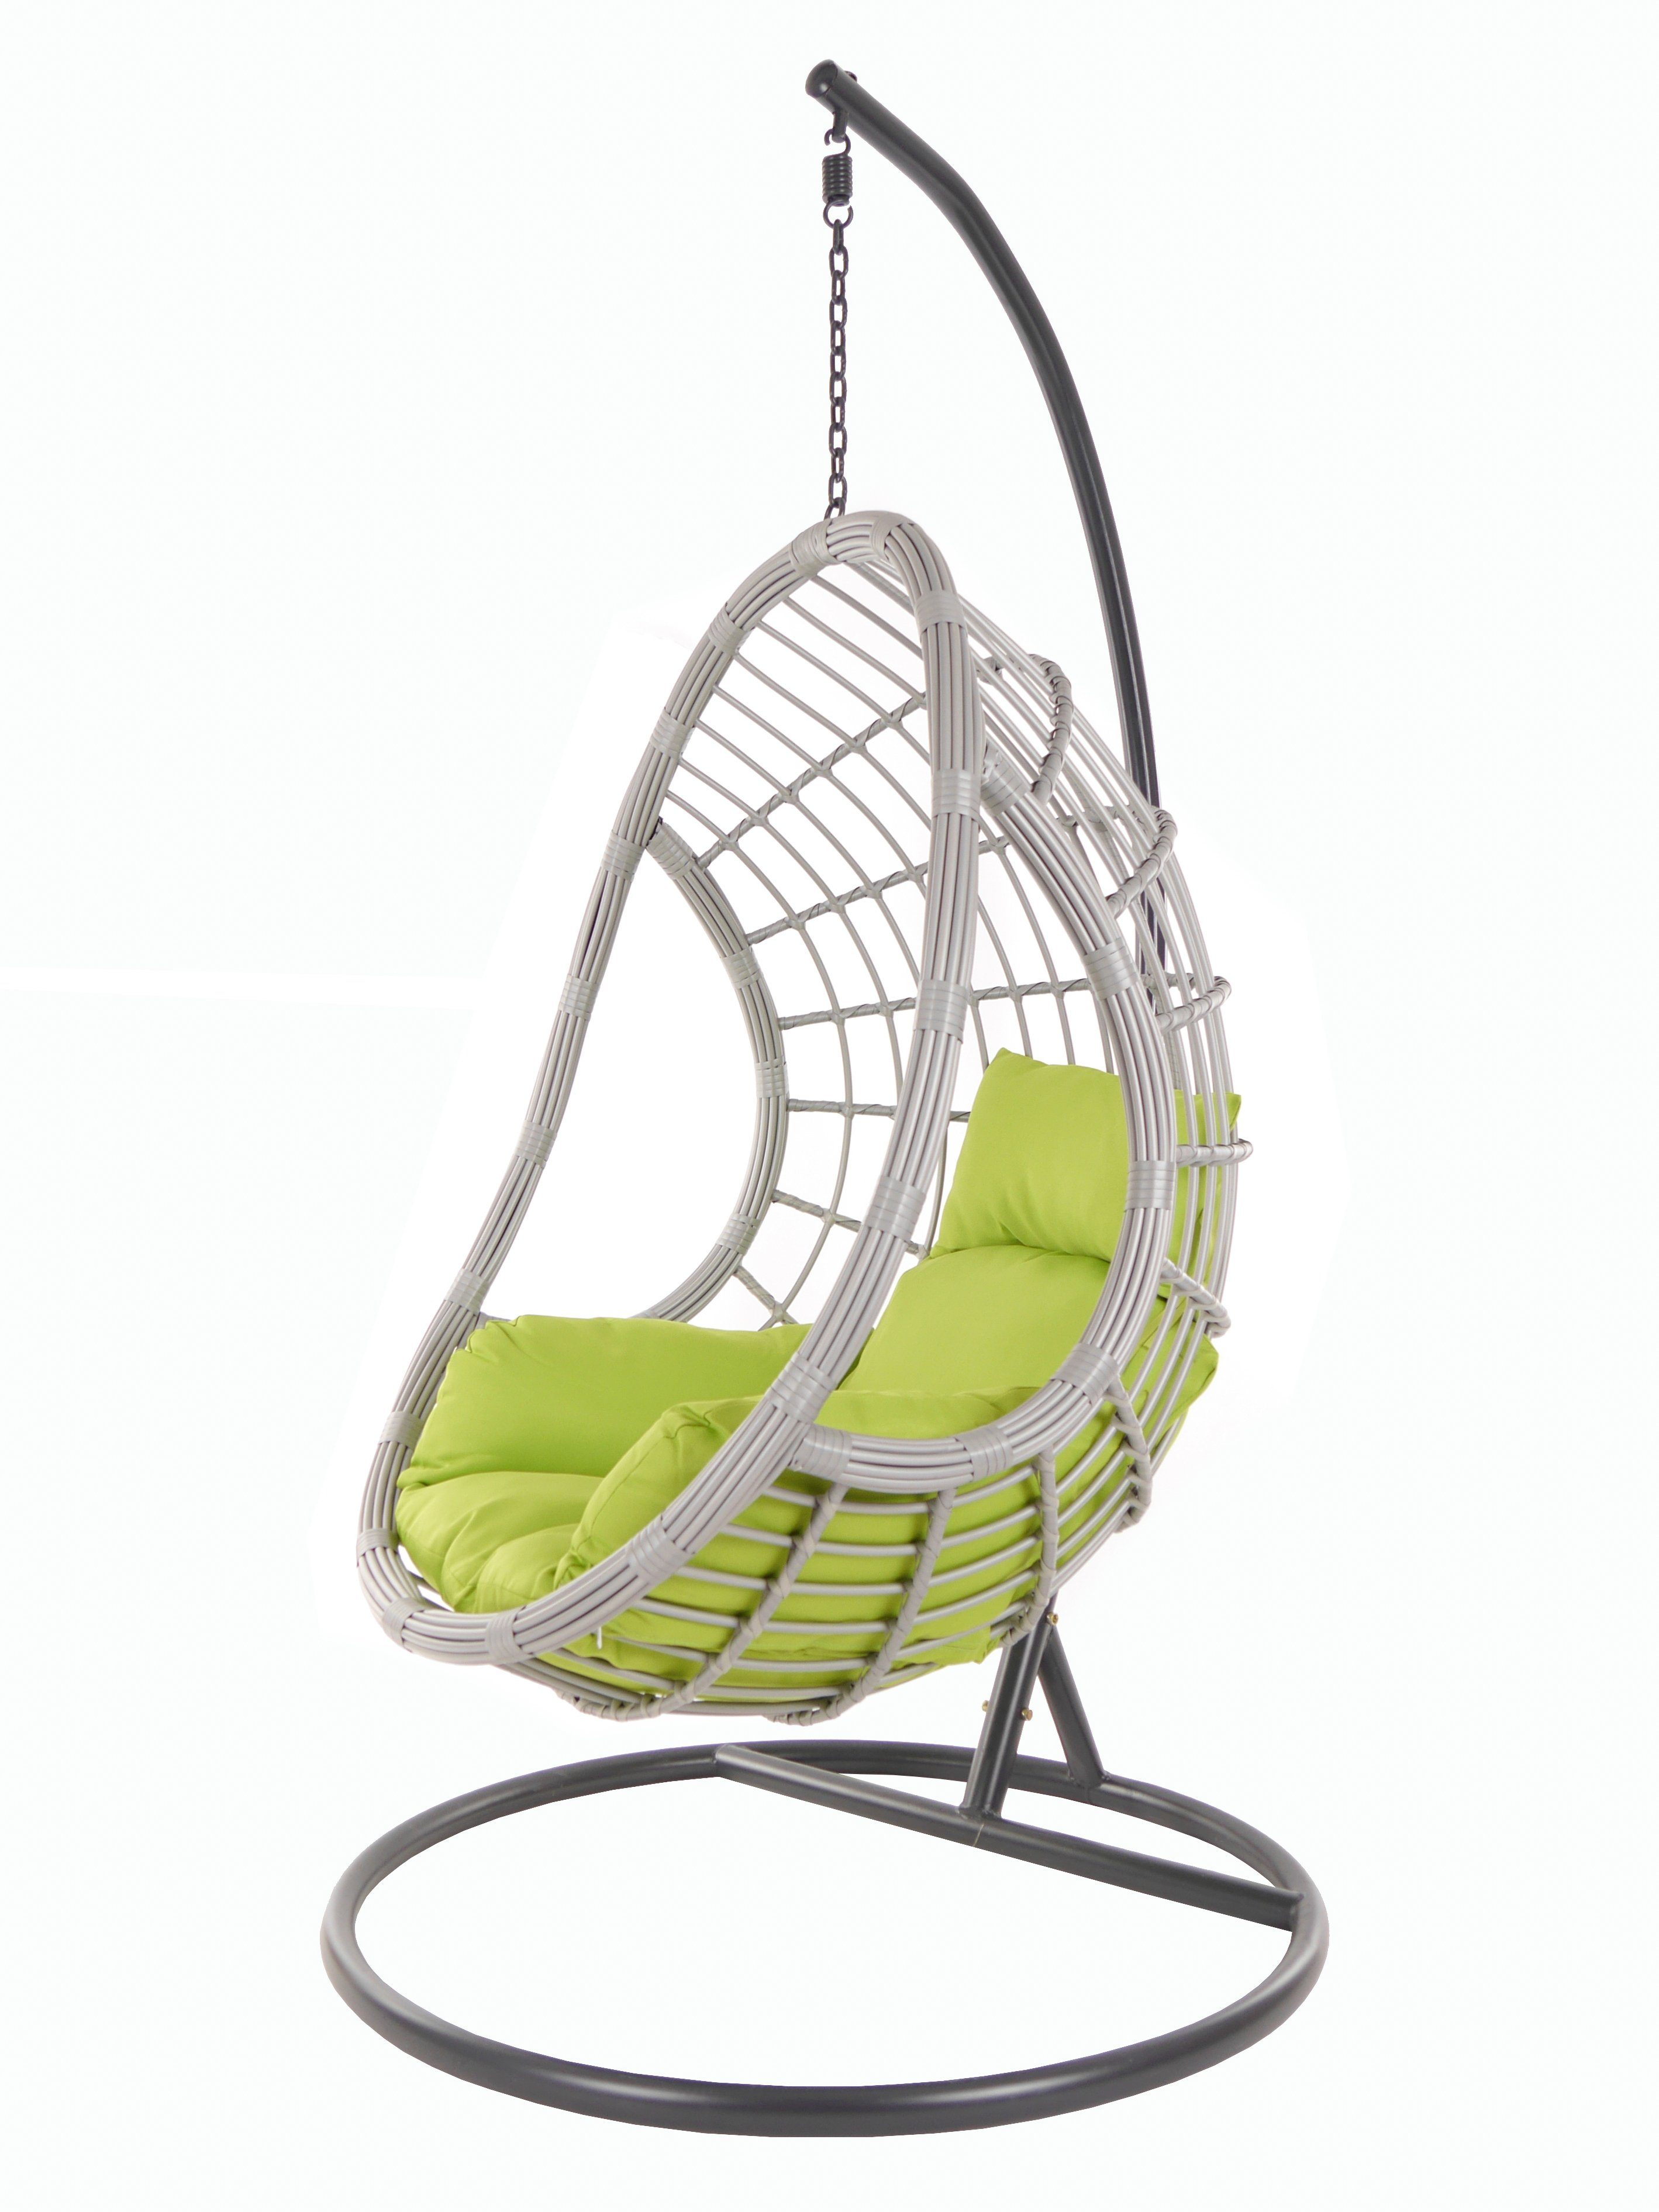 KIDEO Hängesessel PALMANOVA lightgrey, Schwebesessel mit Gestell und Kissen, Swing Chair, Loungemöbel apfelgrün (6068 apple green)